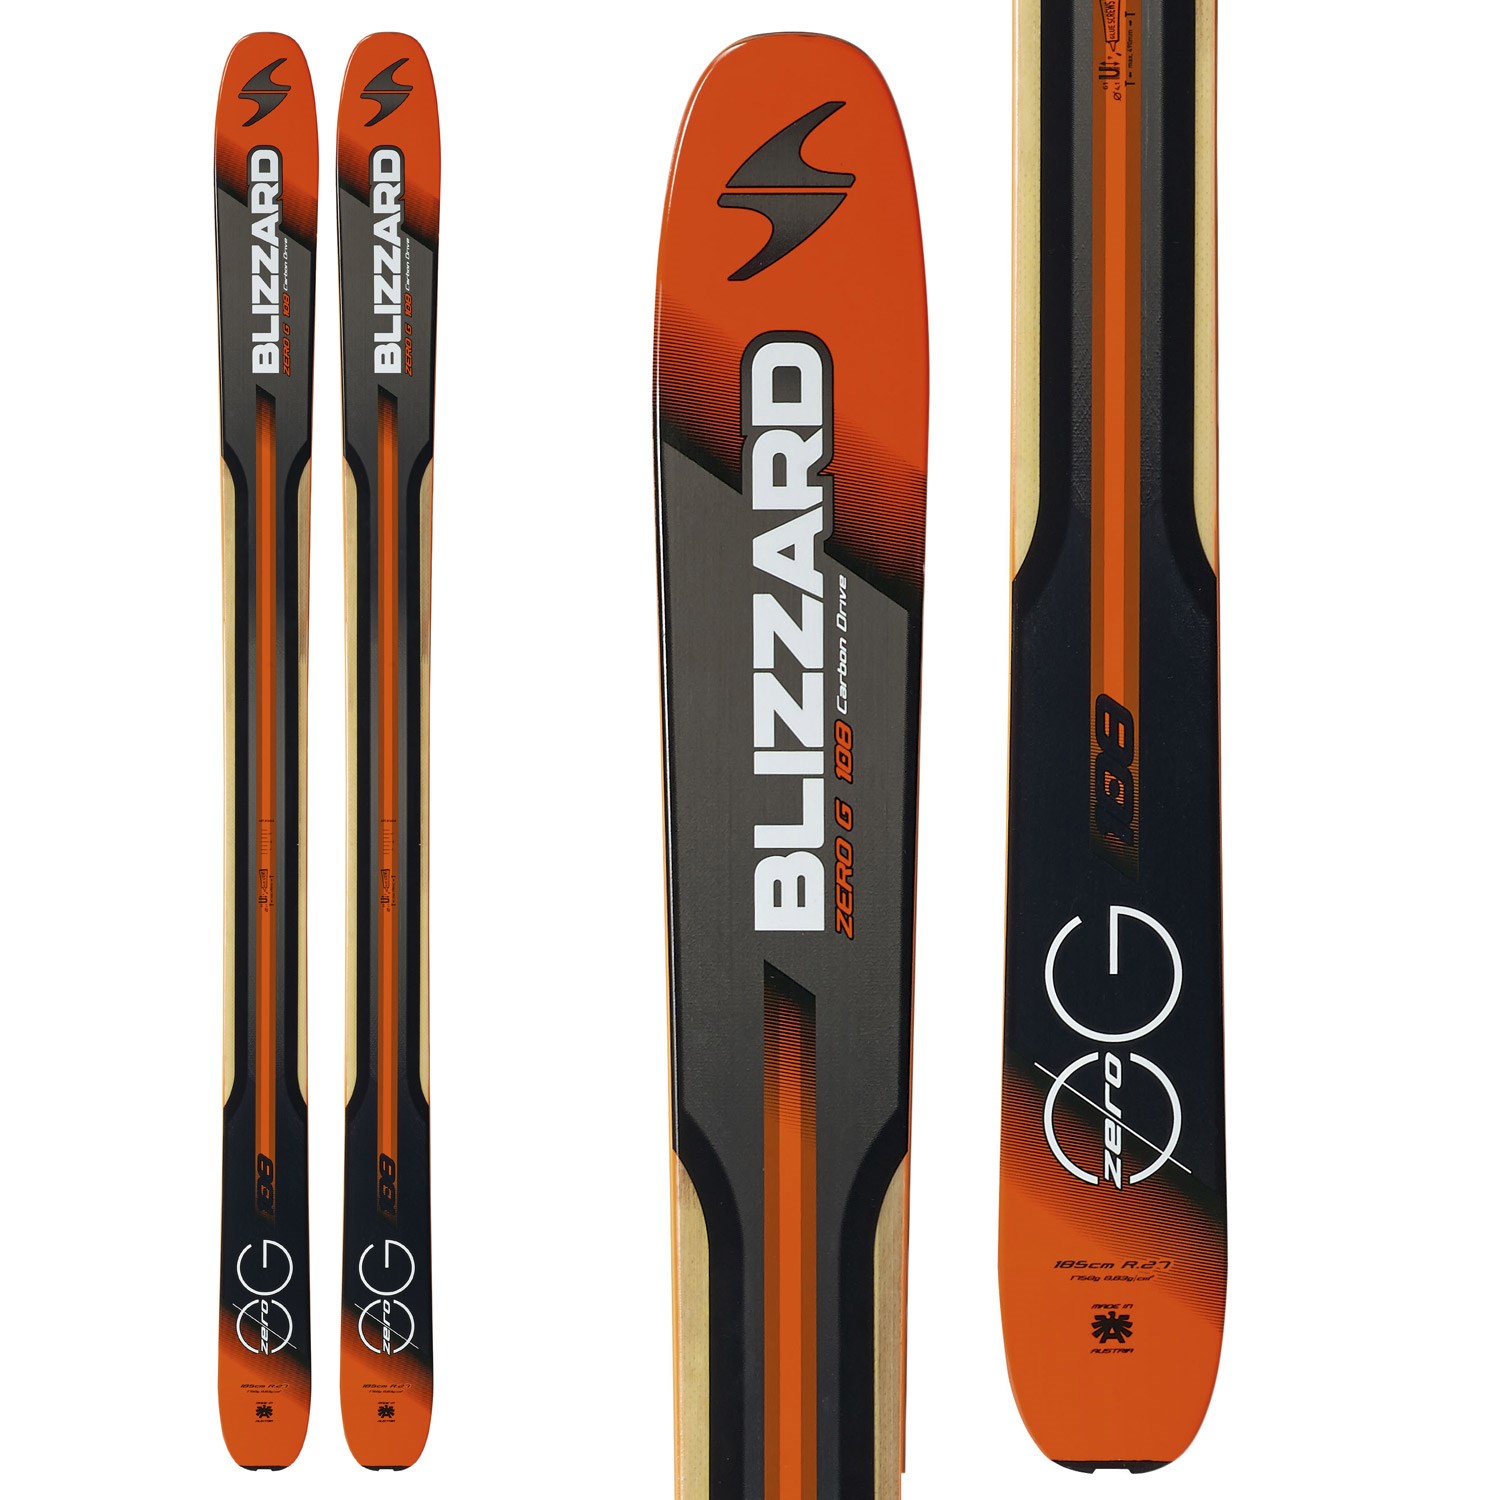 Blizzard Zero G 108 Skis 2016 | evo